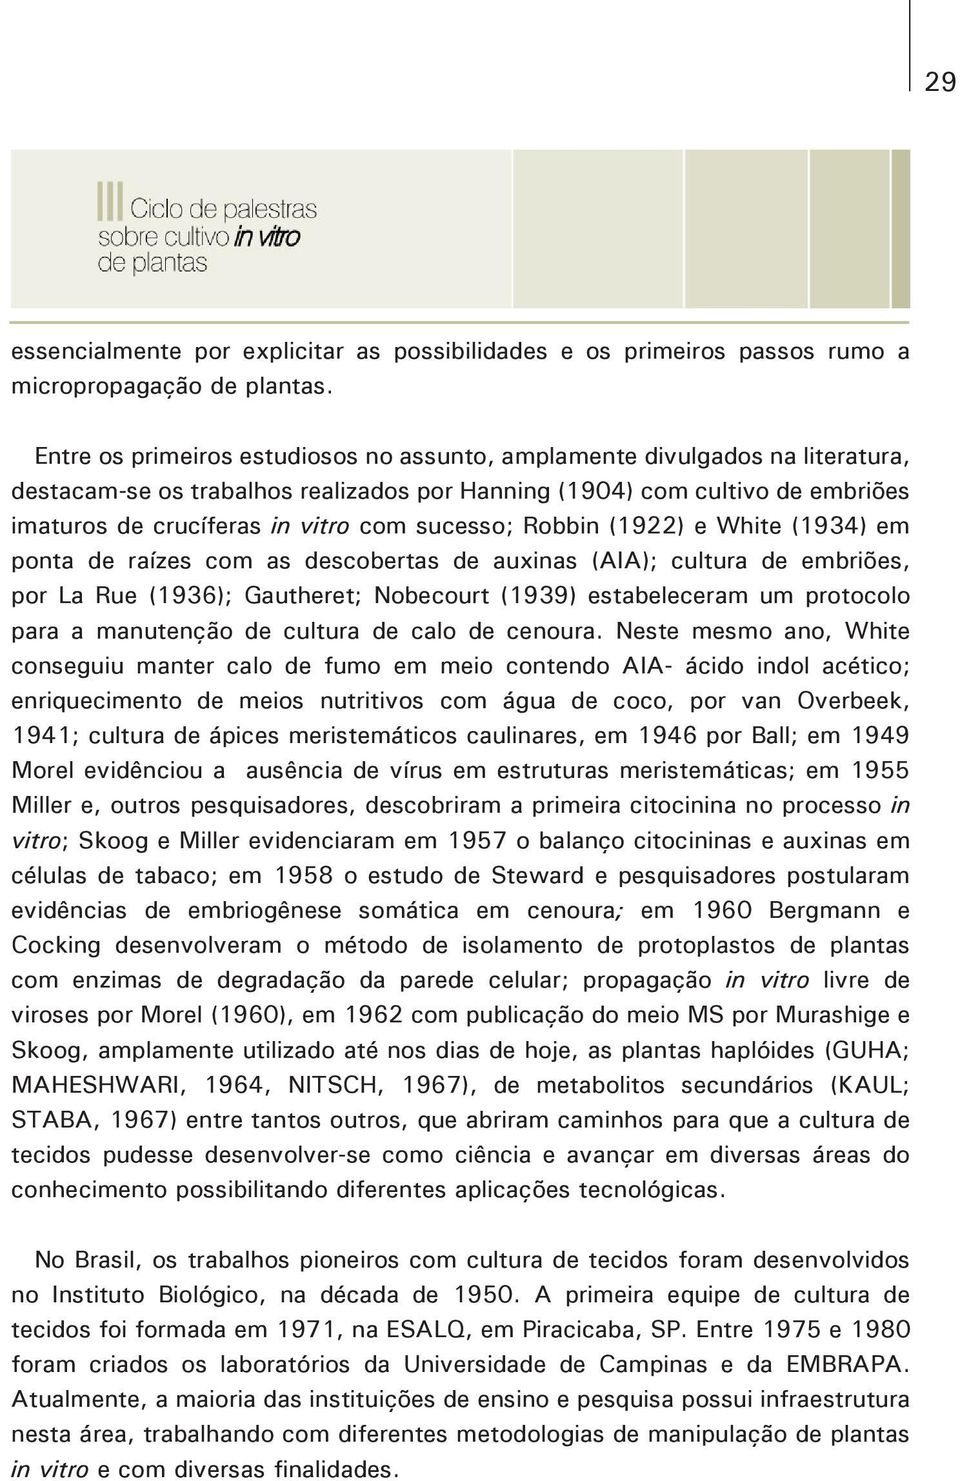 sucesso; Robbin (1922) e White (1934) em ponta de raízes com as descobertas de auxinas (AIA); cultura de embriões, por La Rue (1936); Gautheret; Nobecourt (1939) estabeleceram um protocolo para a